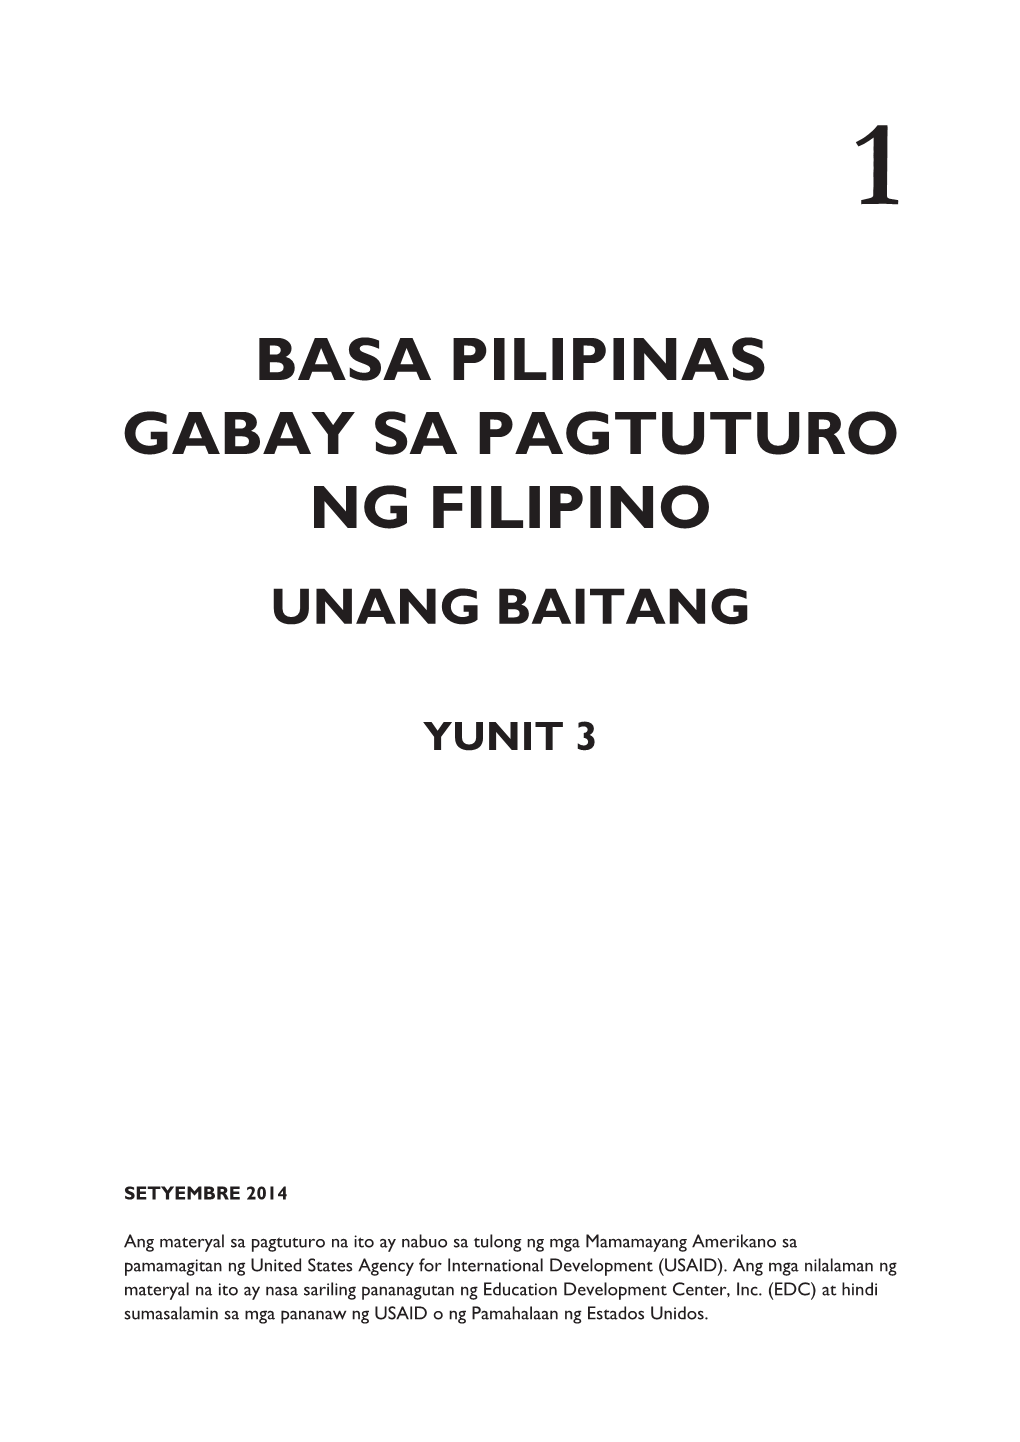 BASA PILIPINAS Gabay Sa Pagtuturo Ng Filipino Unang Baitang